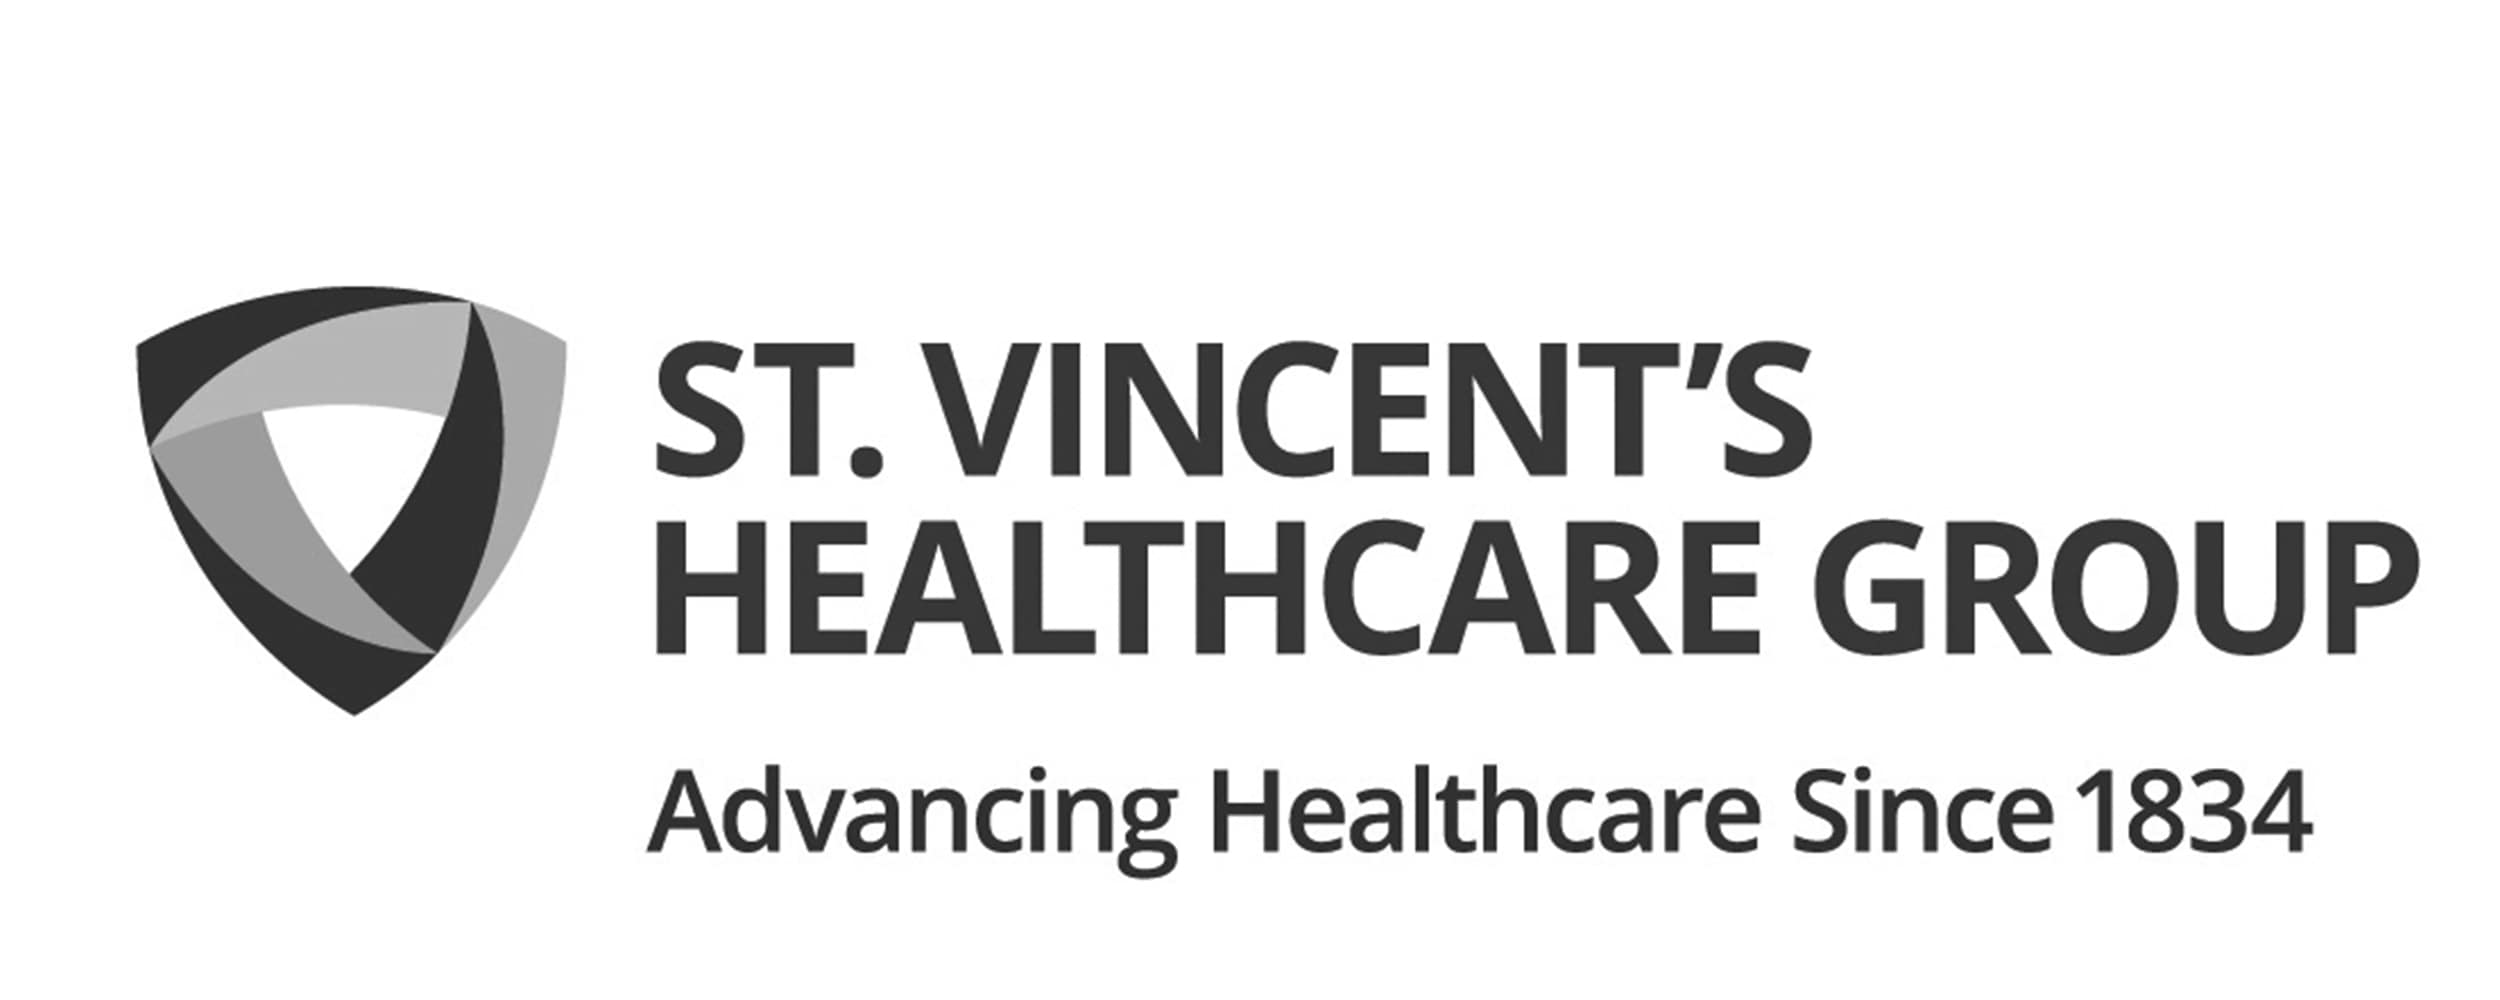 St. Vincent's Healthcare Group Ltd - €30m